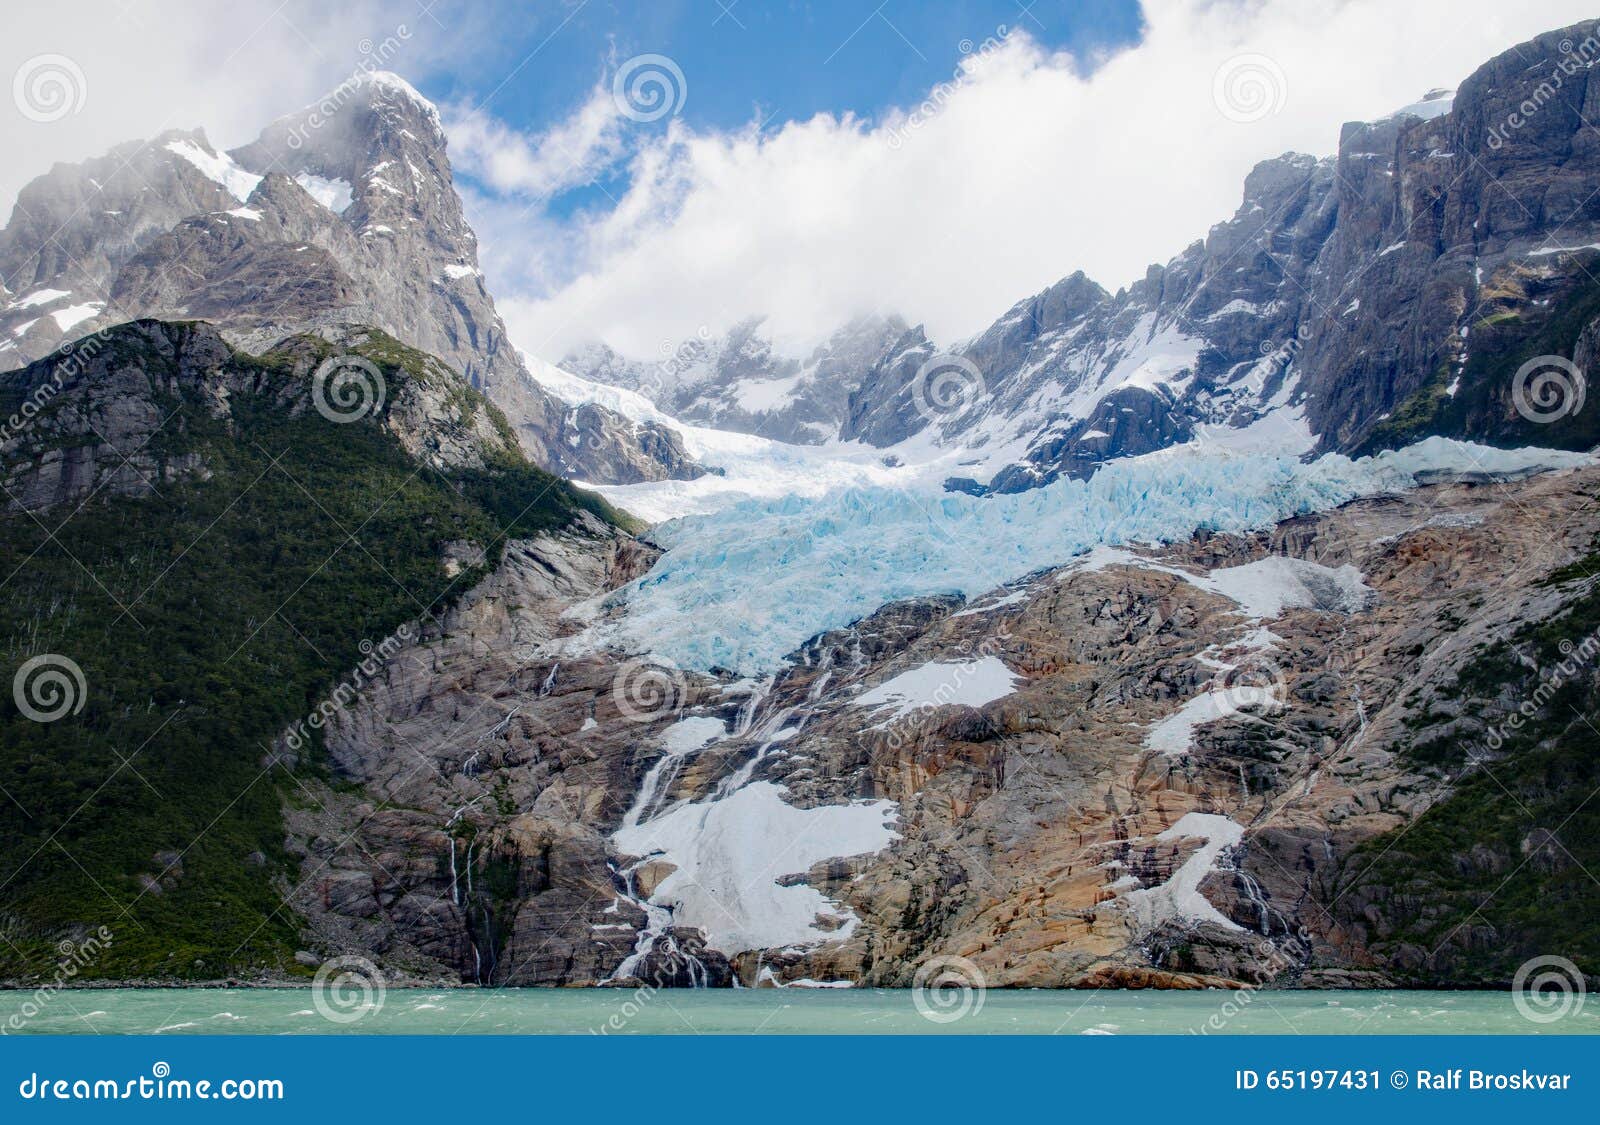 balmaceda glacier